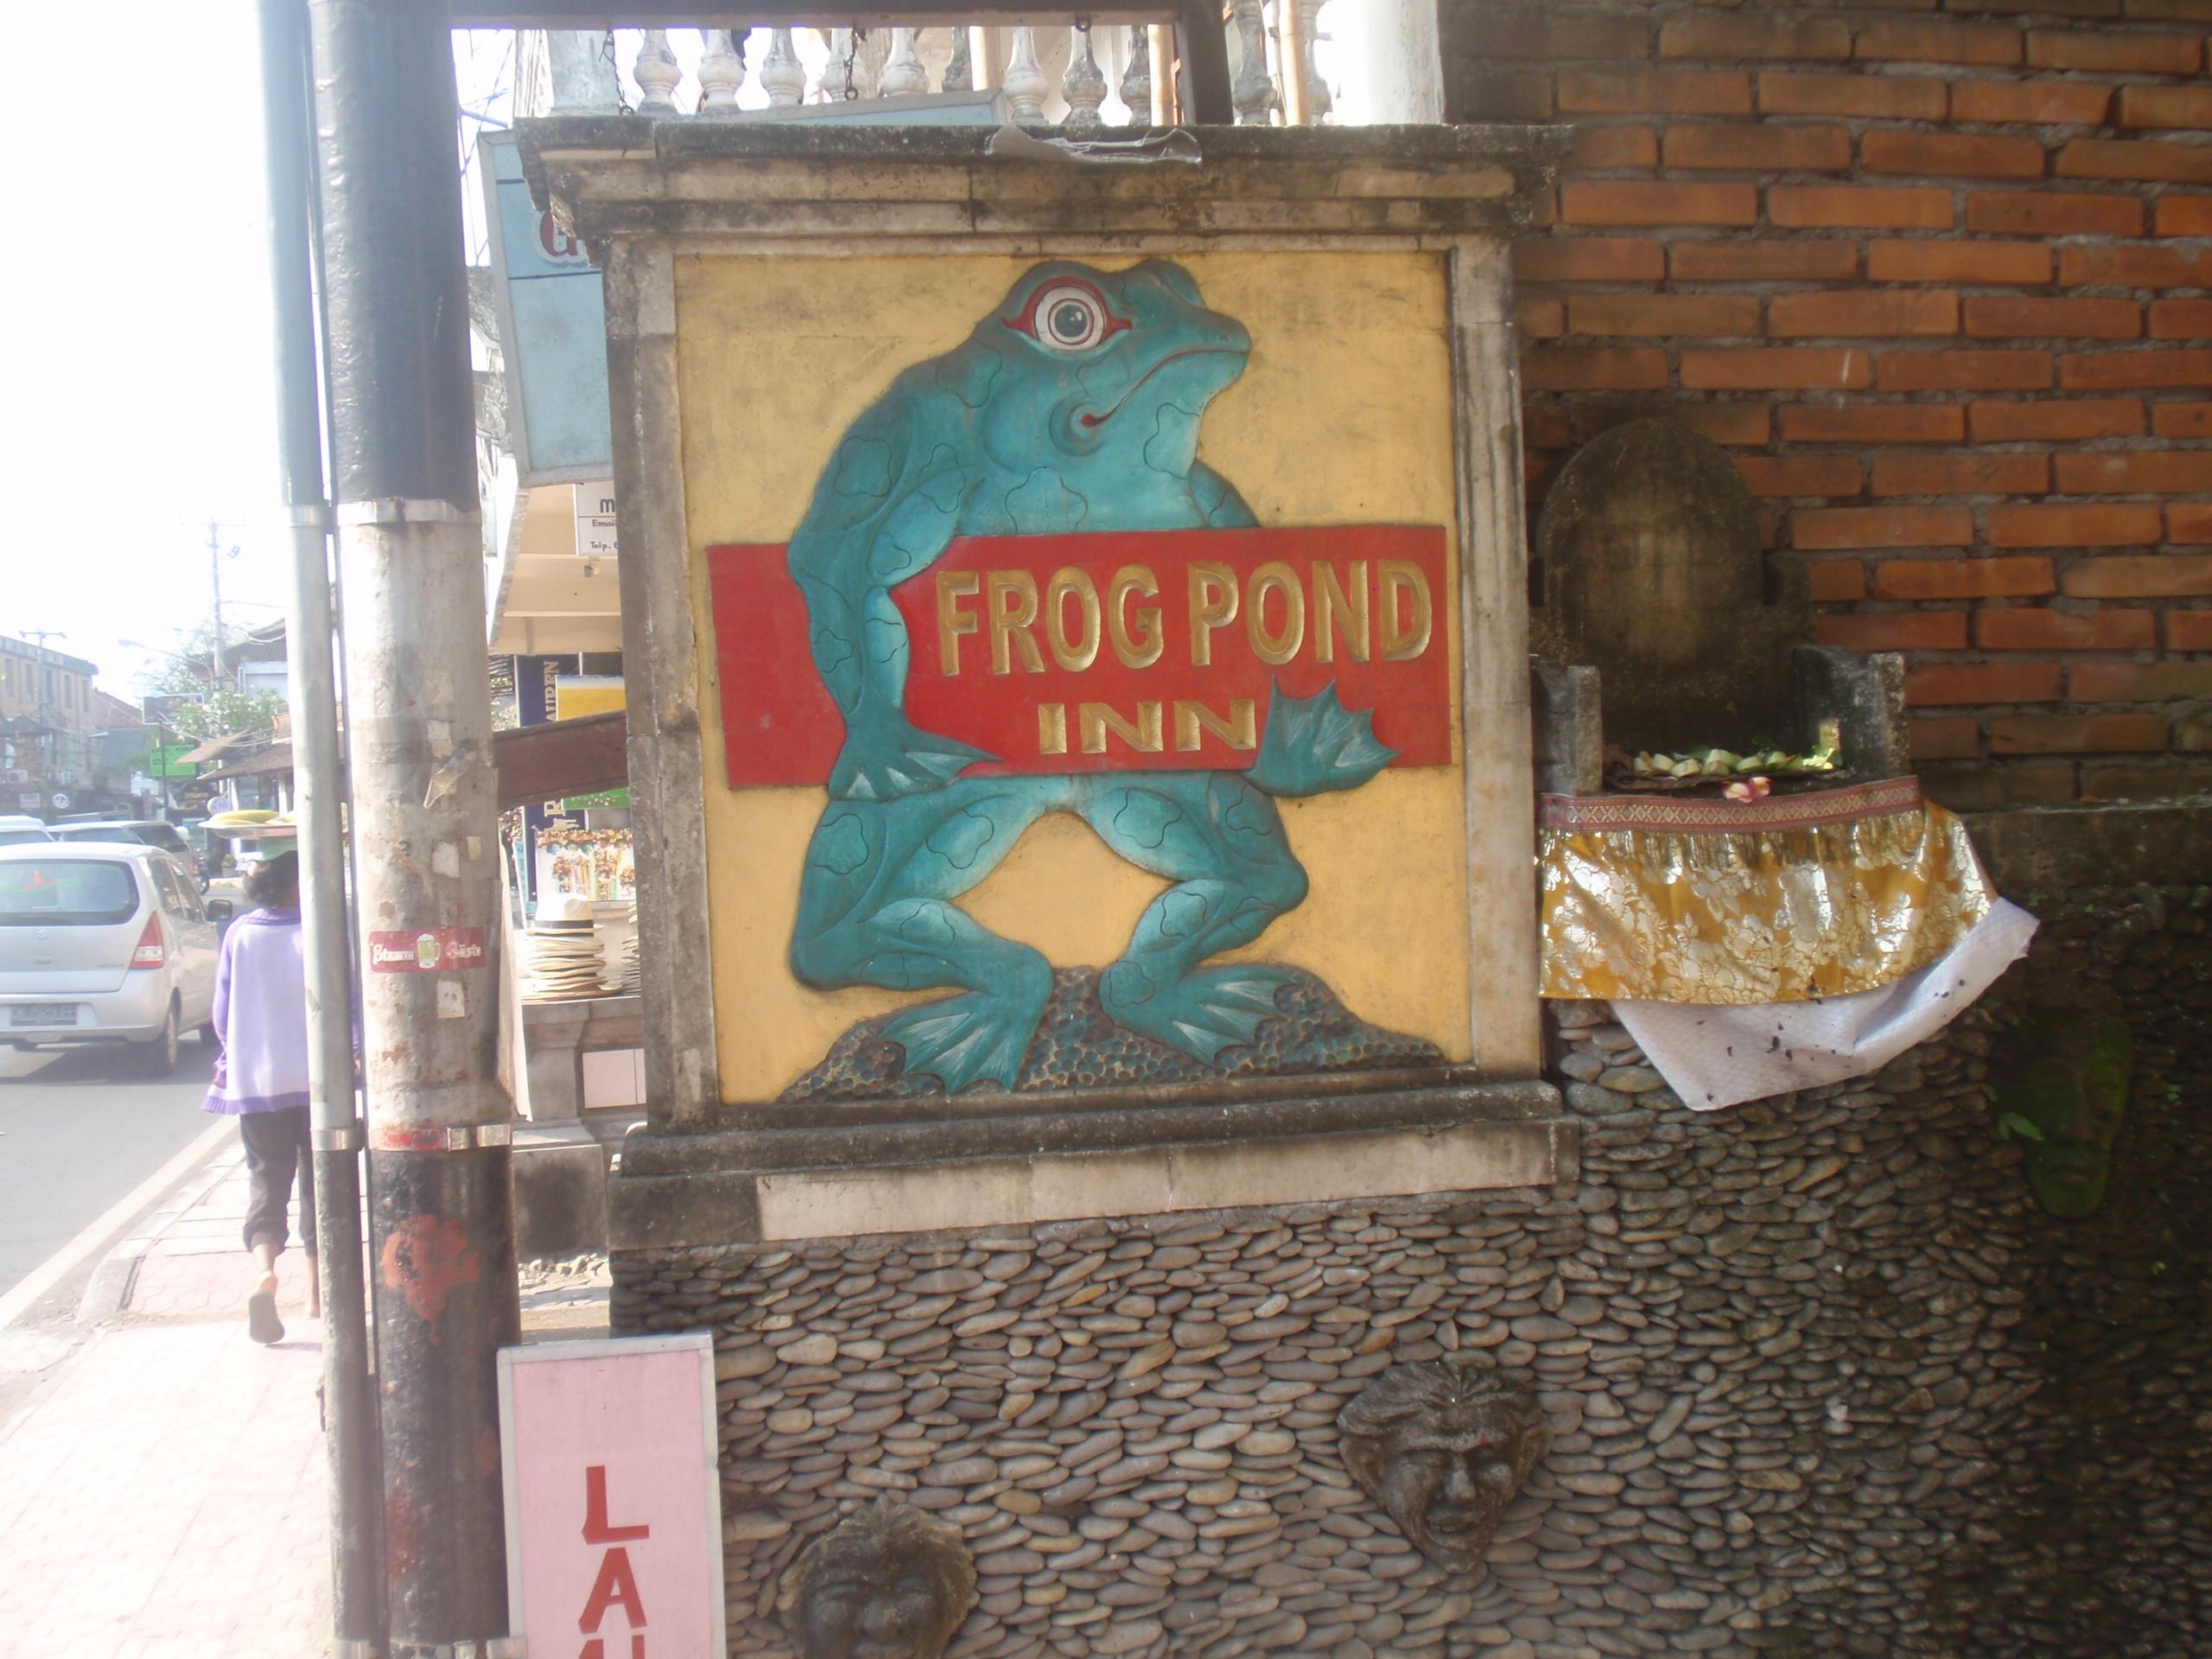 Frogg Pond Inn